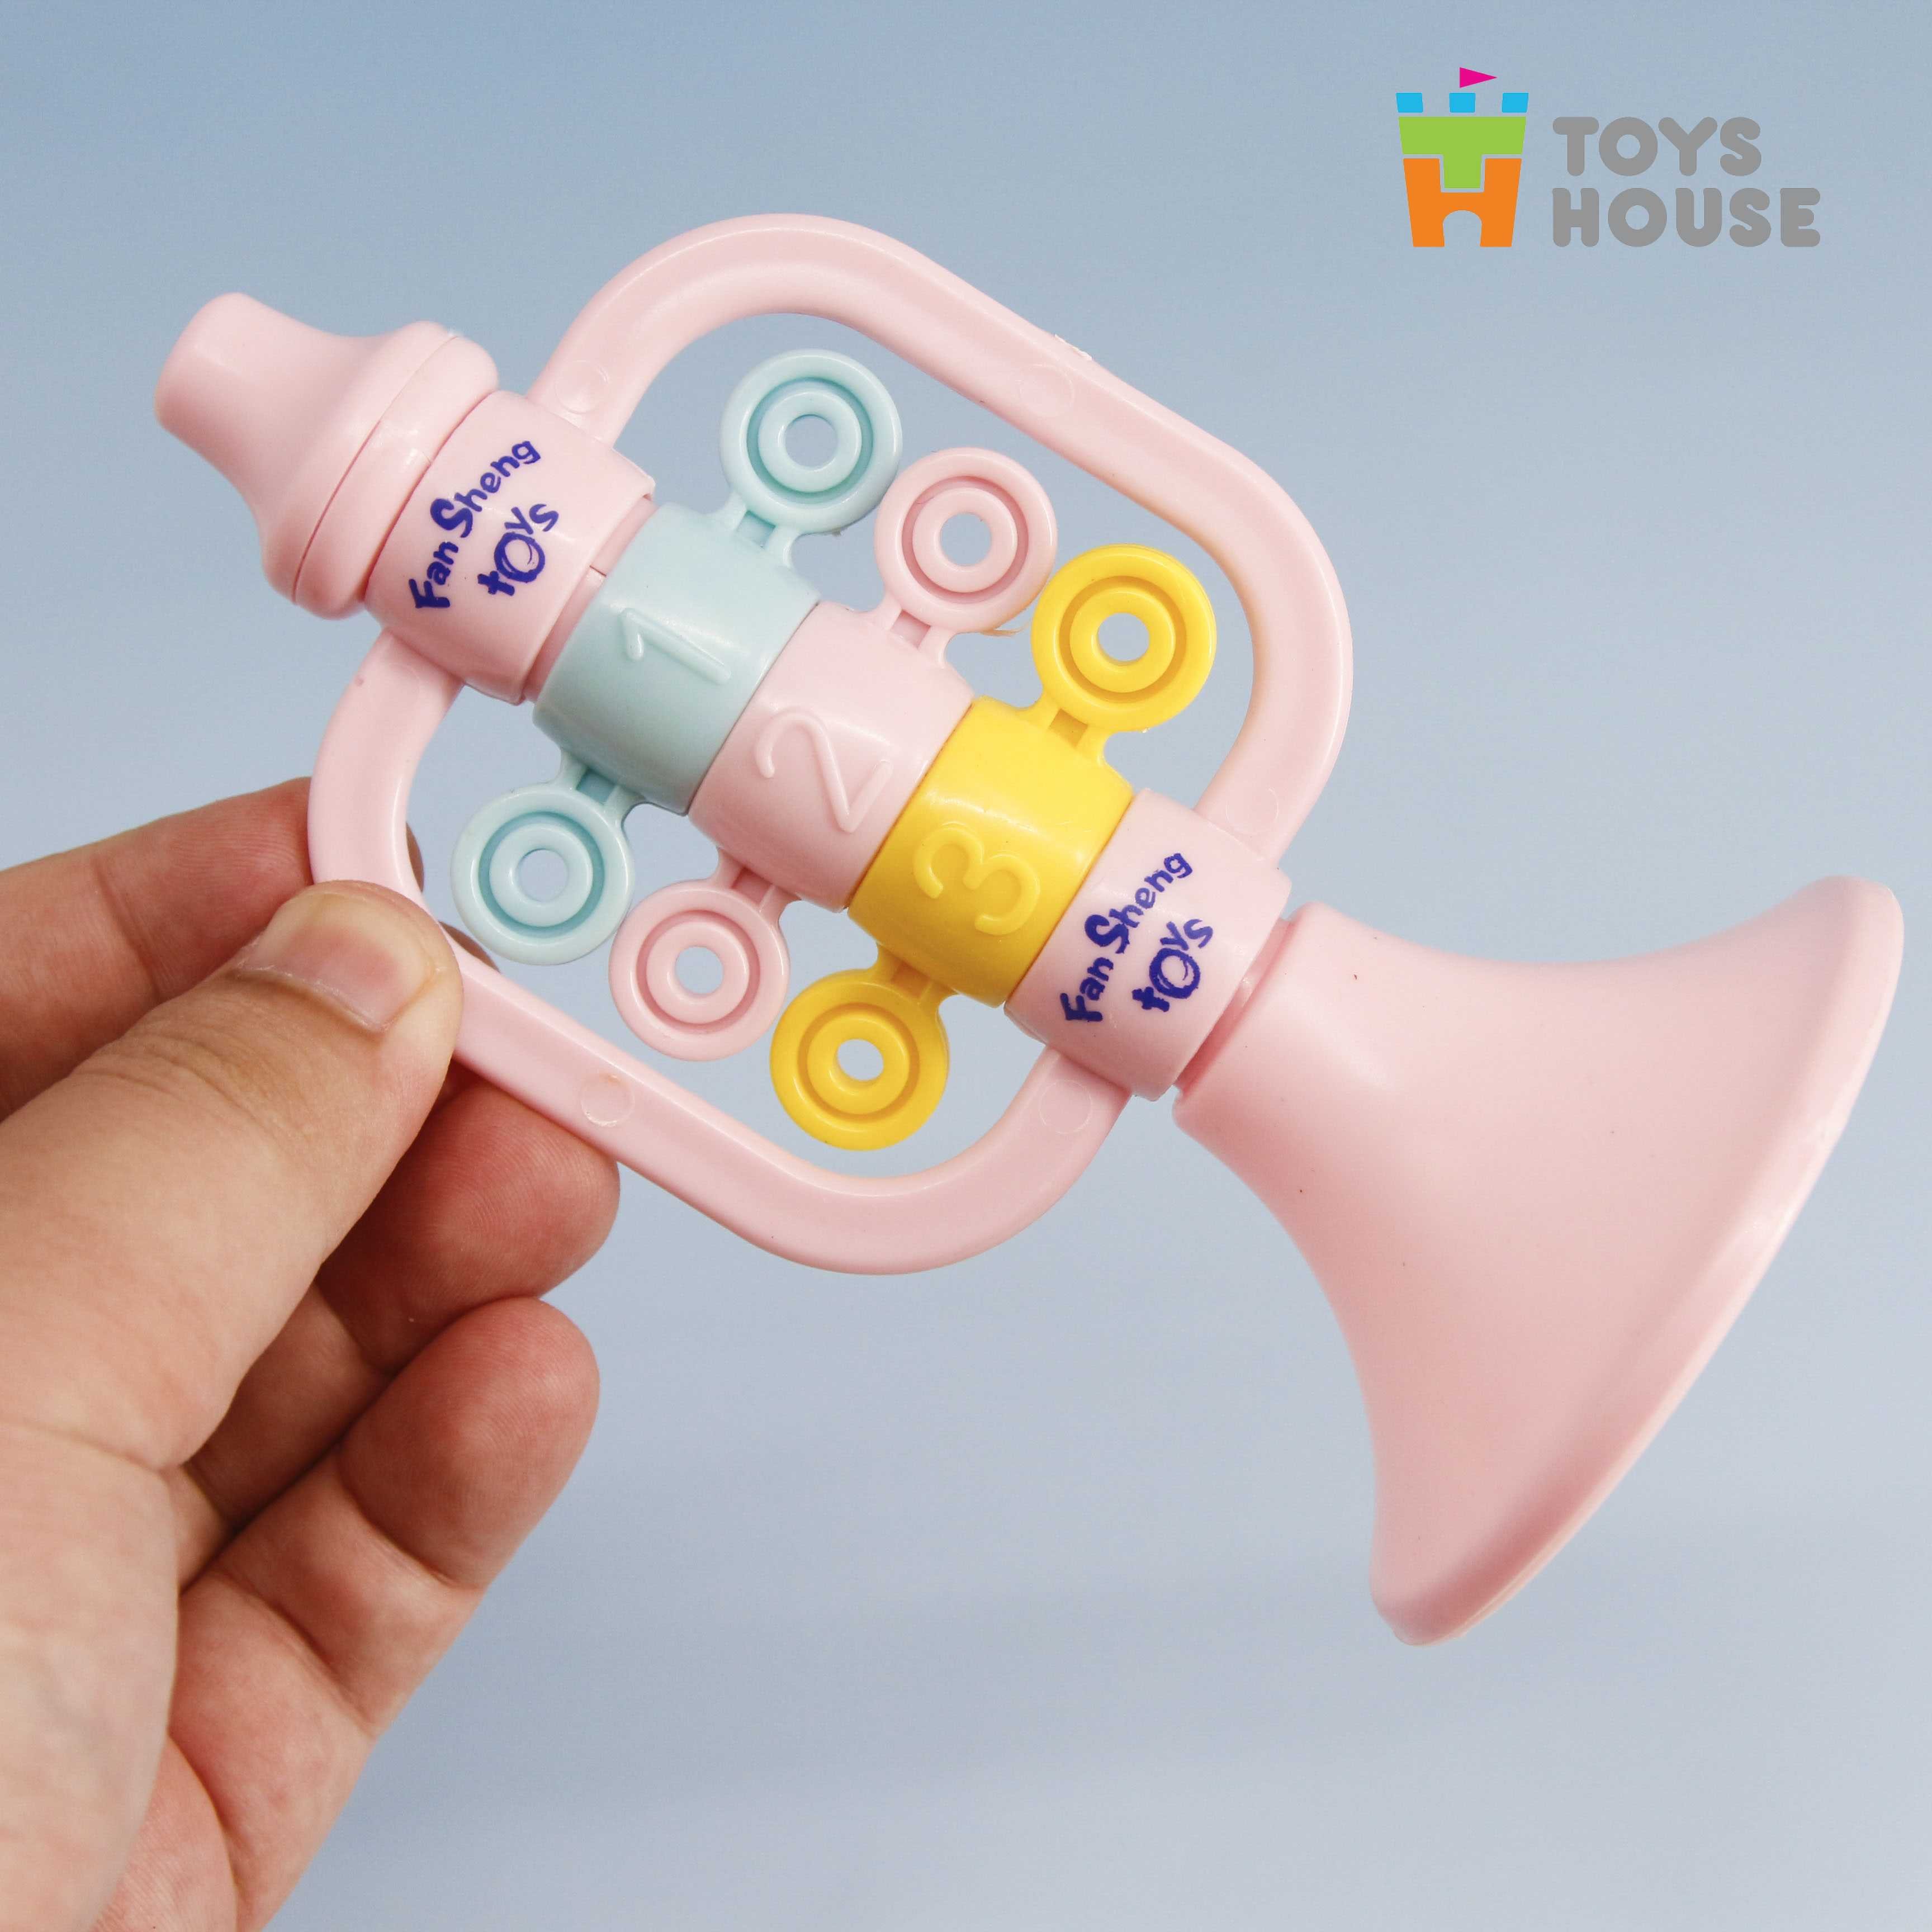 set đồ chơi xúc xắc, lục lạc, kèn, trống toyshouse dành cho bé từ sơ sinh 733 - giúp bé phát triển thị giác, thính giác 6